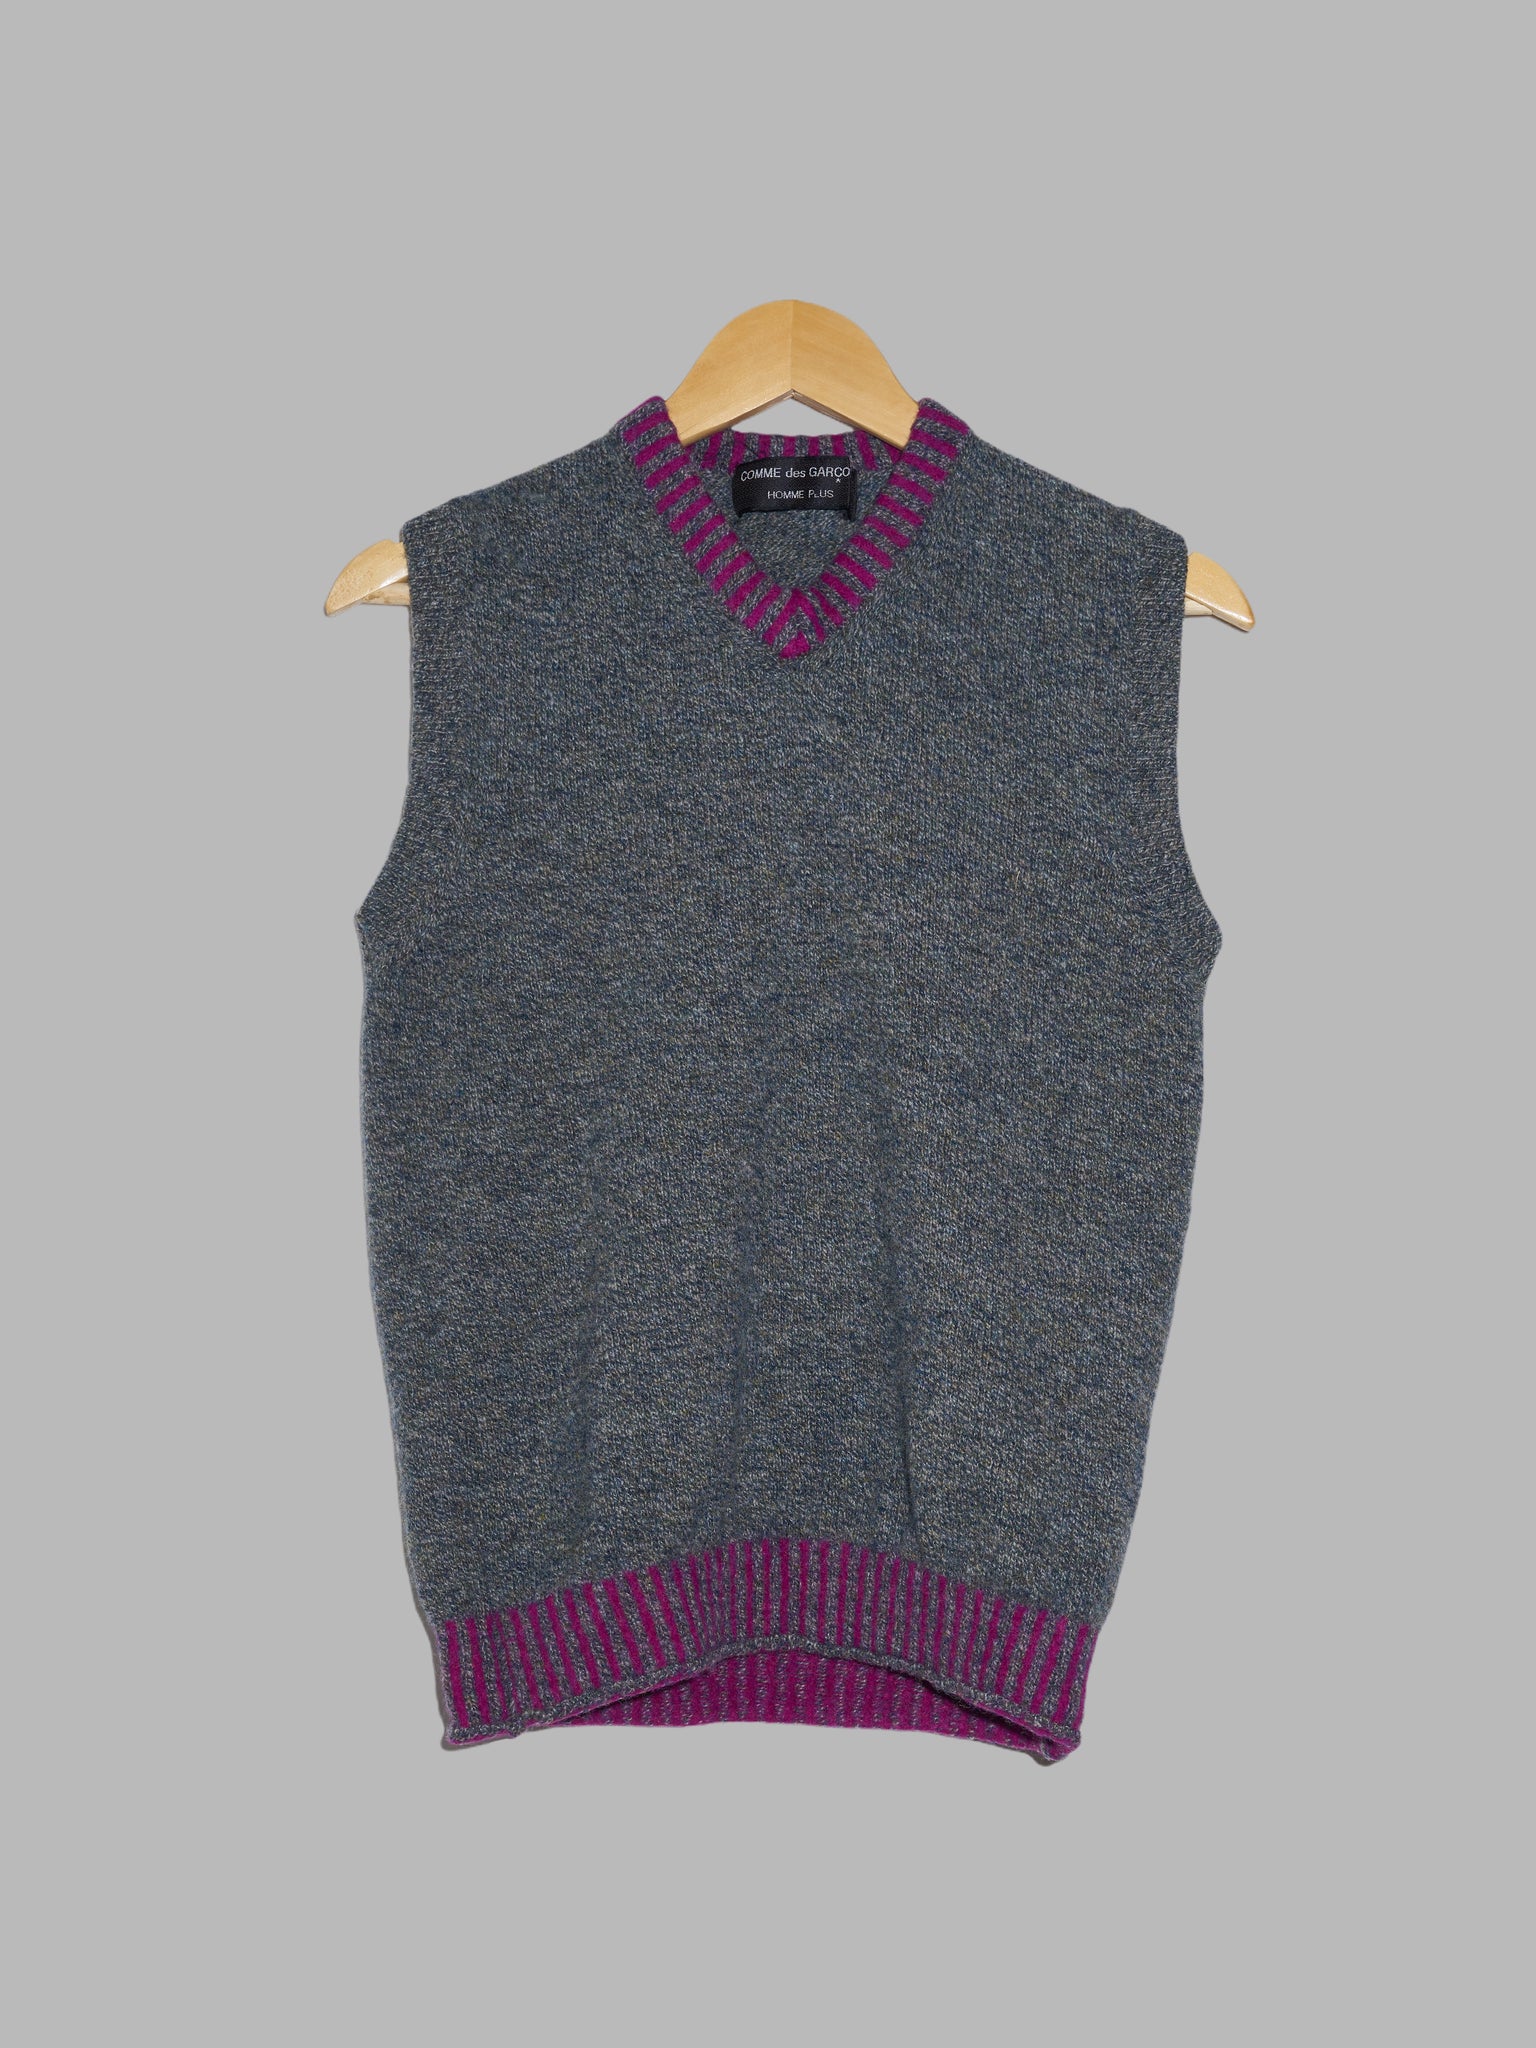 Comme des Garcons Homme Plus 1996 heathered grey wool knit purple trim vest - XS